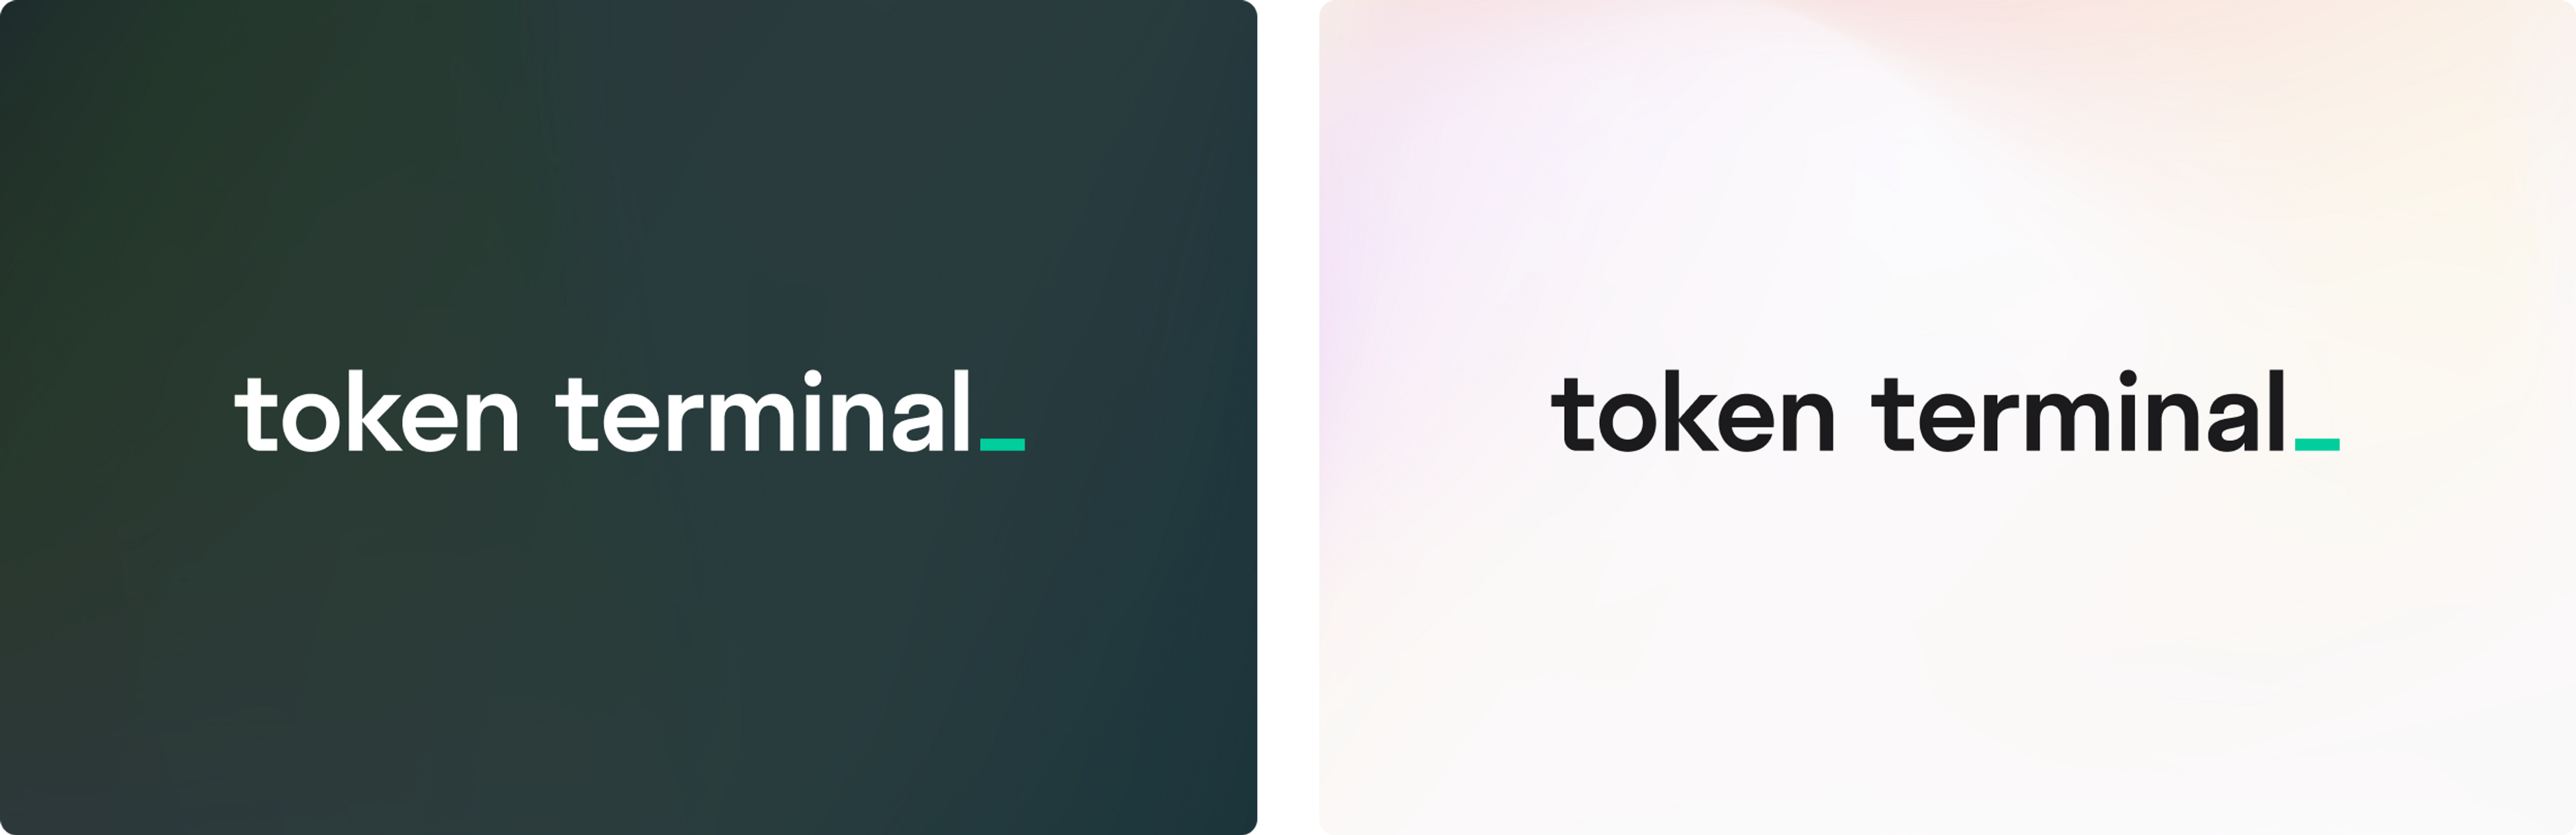 Image of light Token Terminal logo on dark background and dark Token Terminal logo on light background